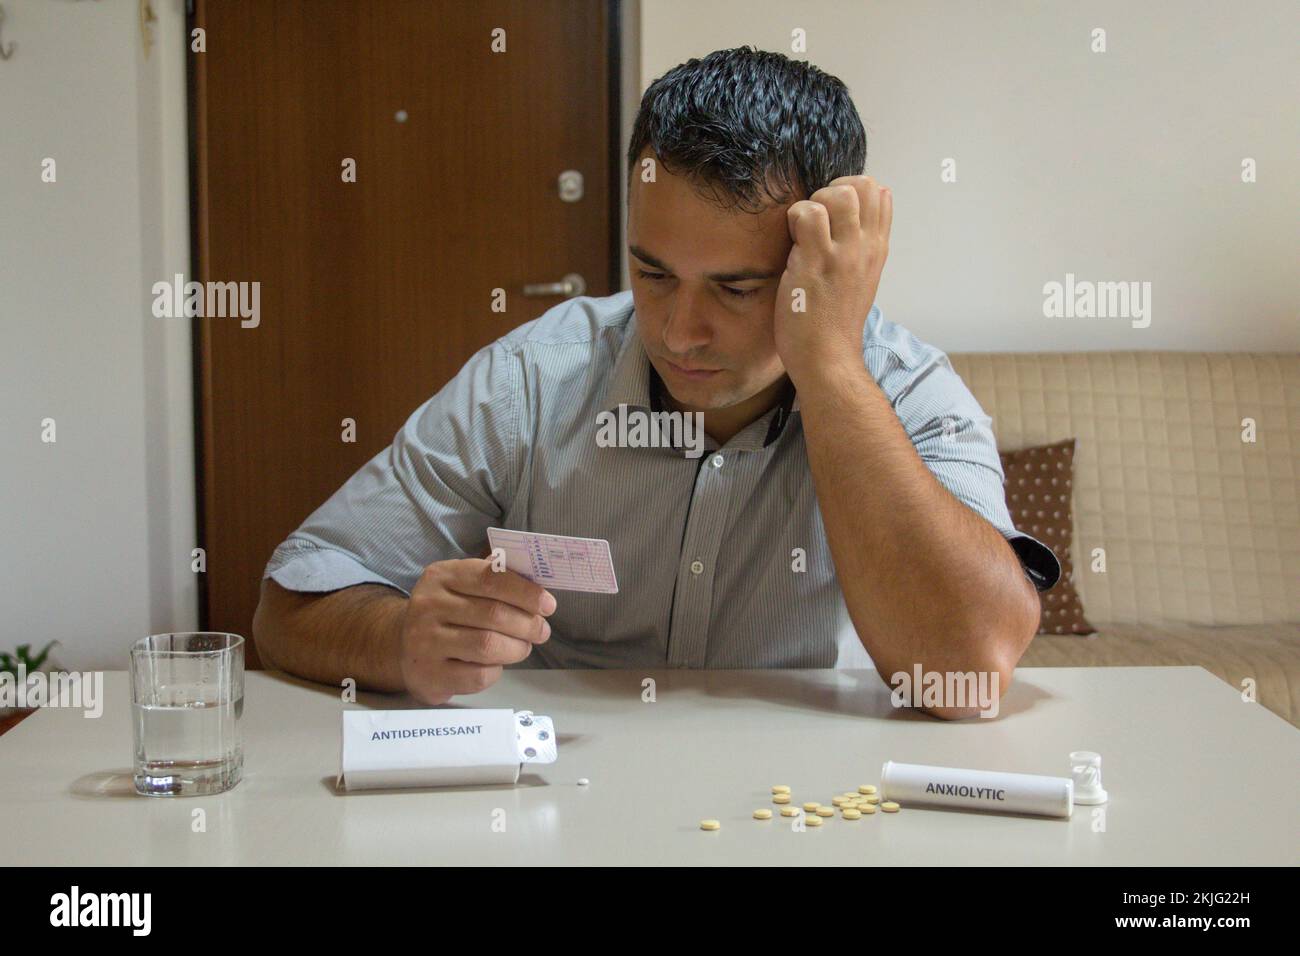 Besorgter Mann mit Führerschein in der Hand mit verschiedenen Anxiolytika und Antidepressiva-Pillen auf dem Tisch. Probleme und Nebenwirkungen bestimmter Arzneimittel Stockfoto